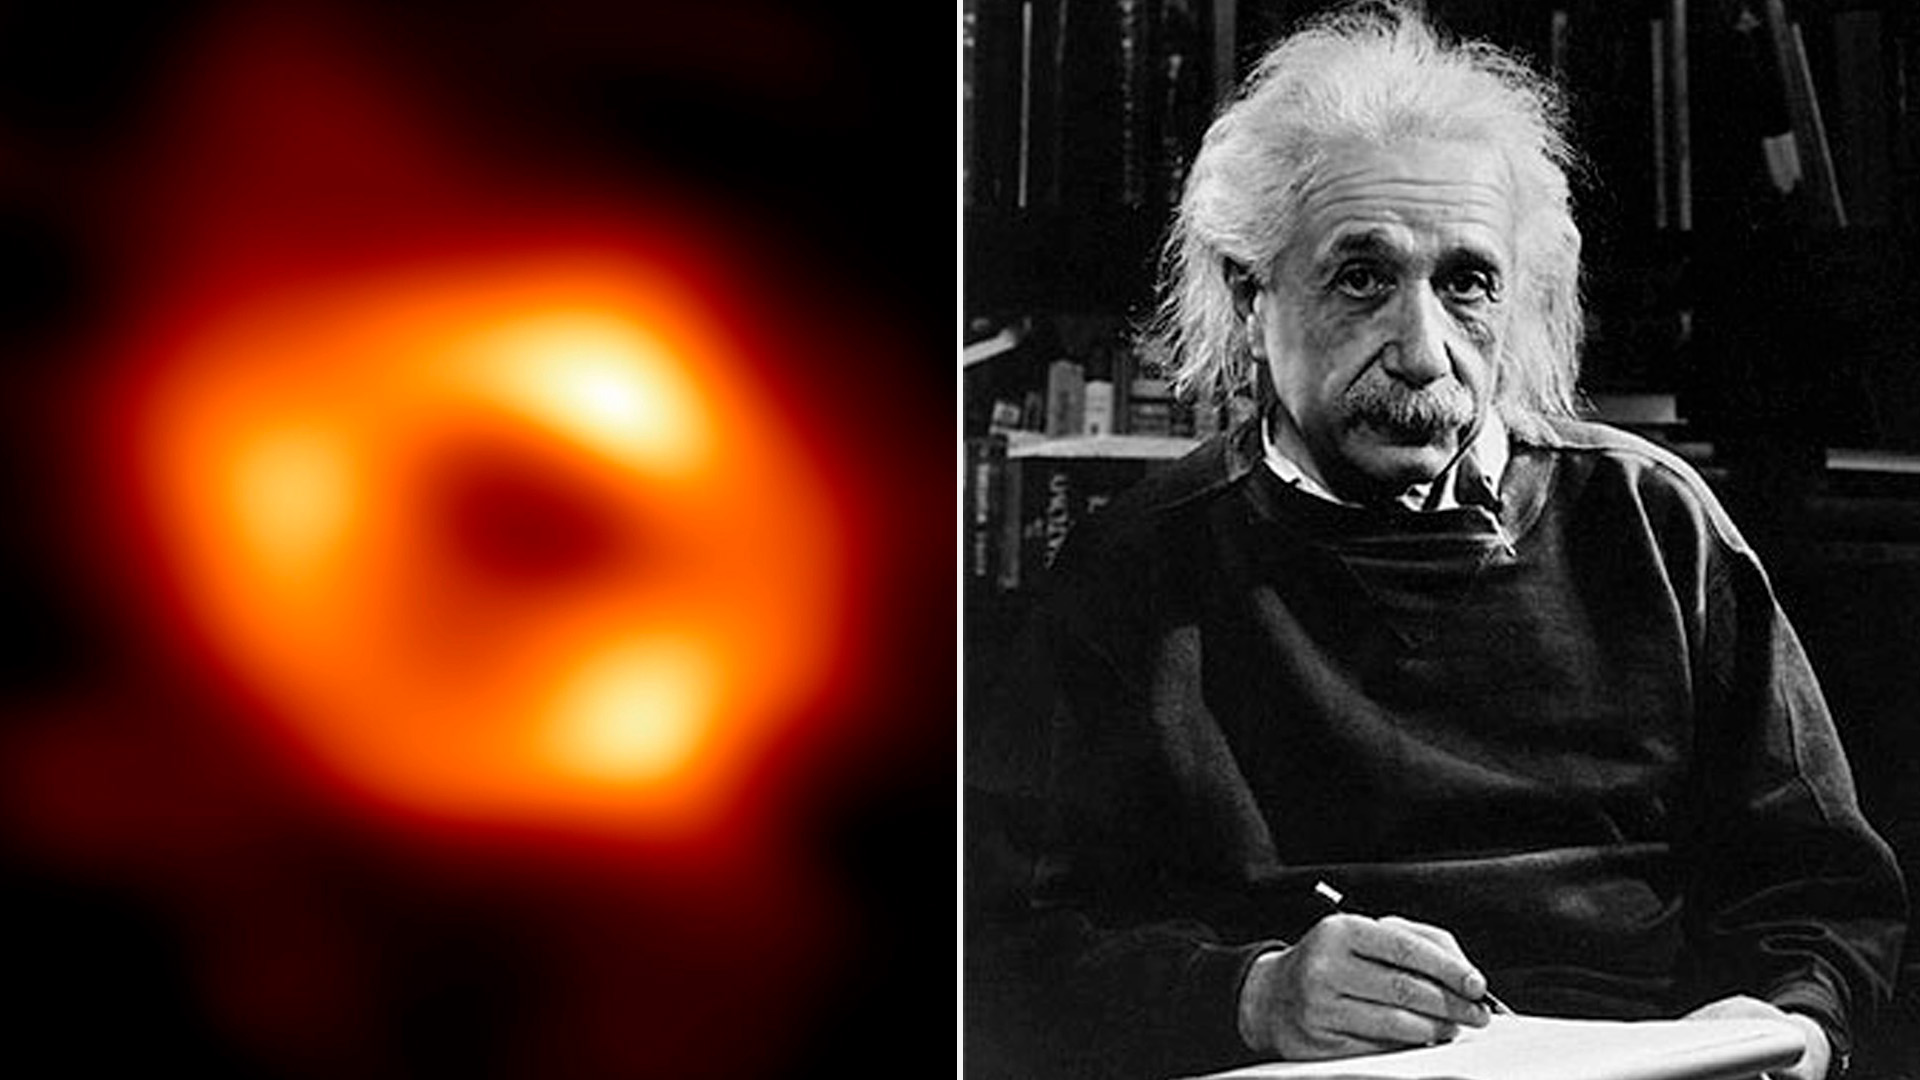 La observación de agujeros negros fue una confirmación de la Teoría de la Relatividad de Albert Einstein